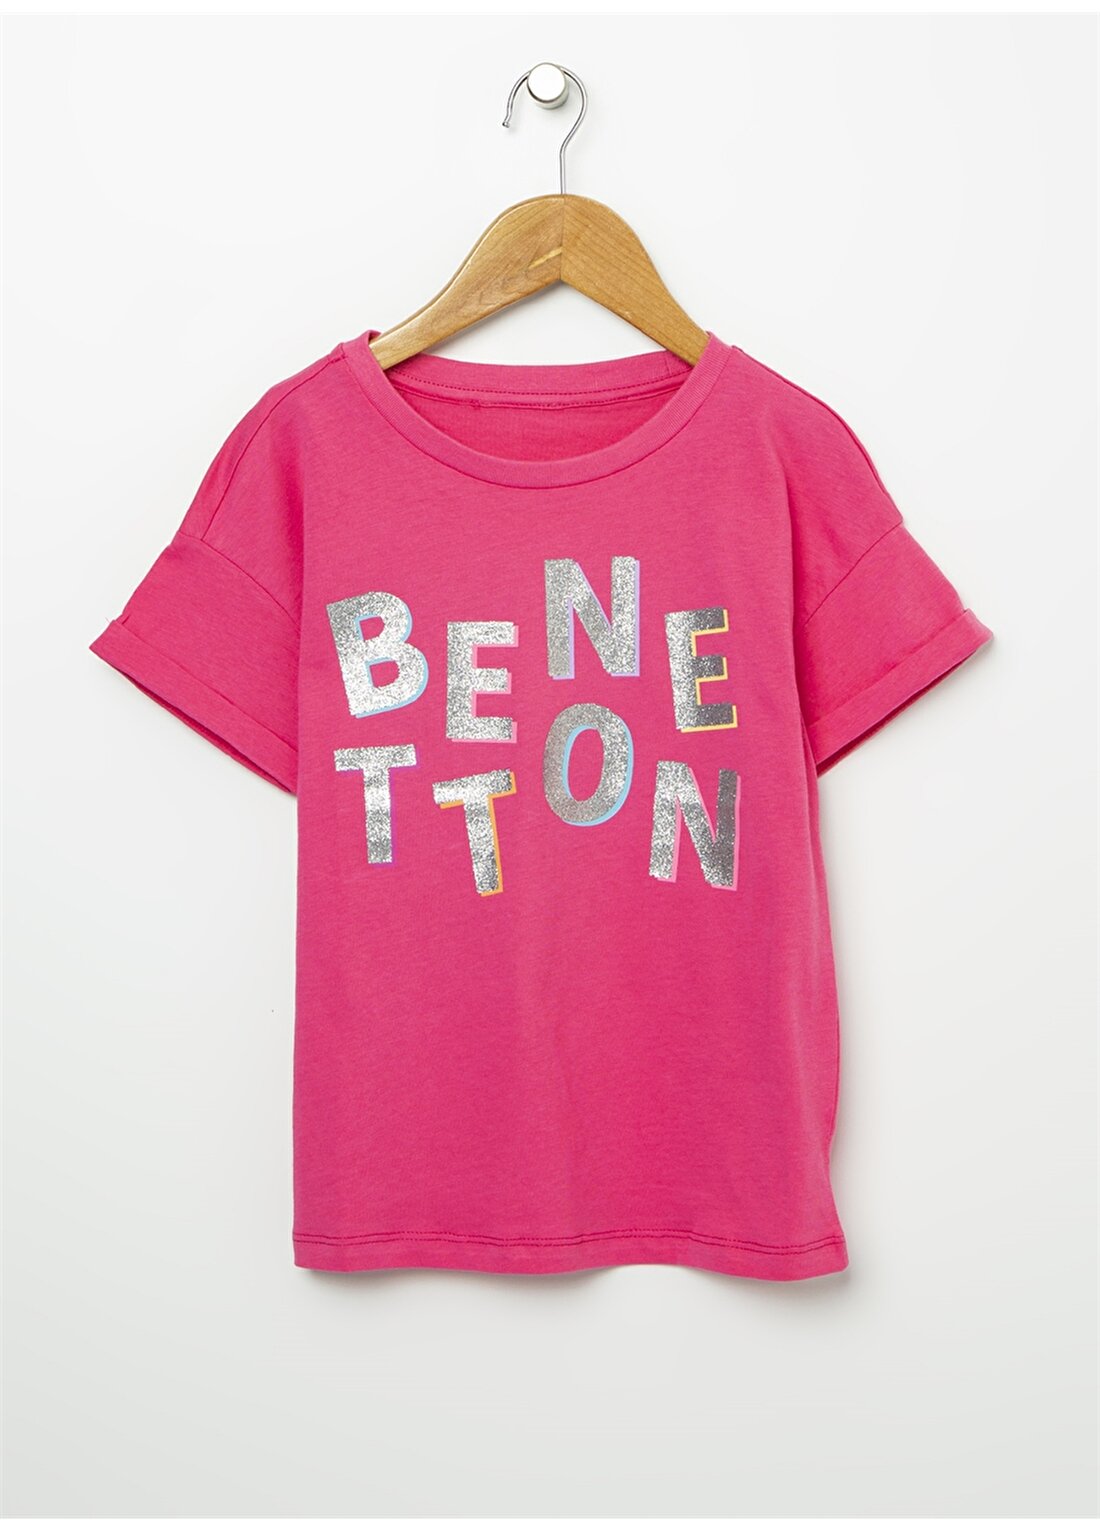 Benetton T-Shirt